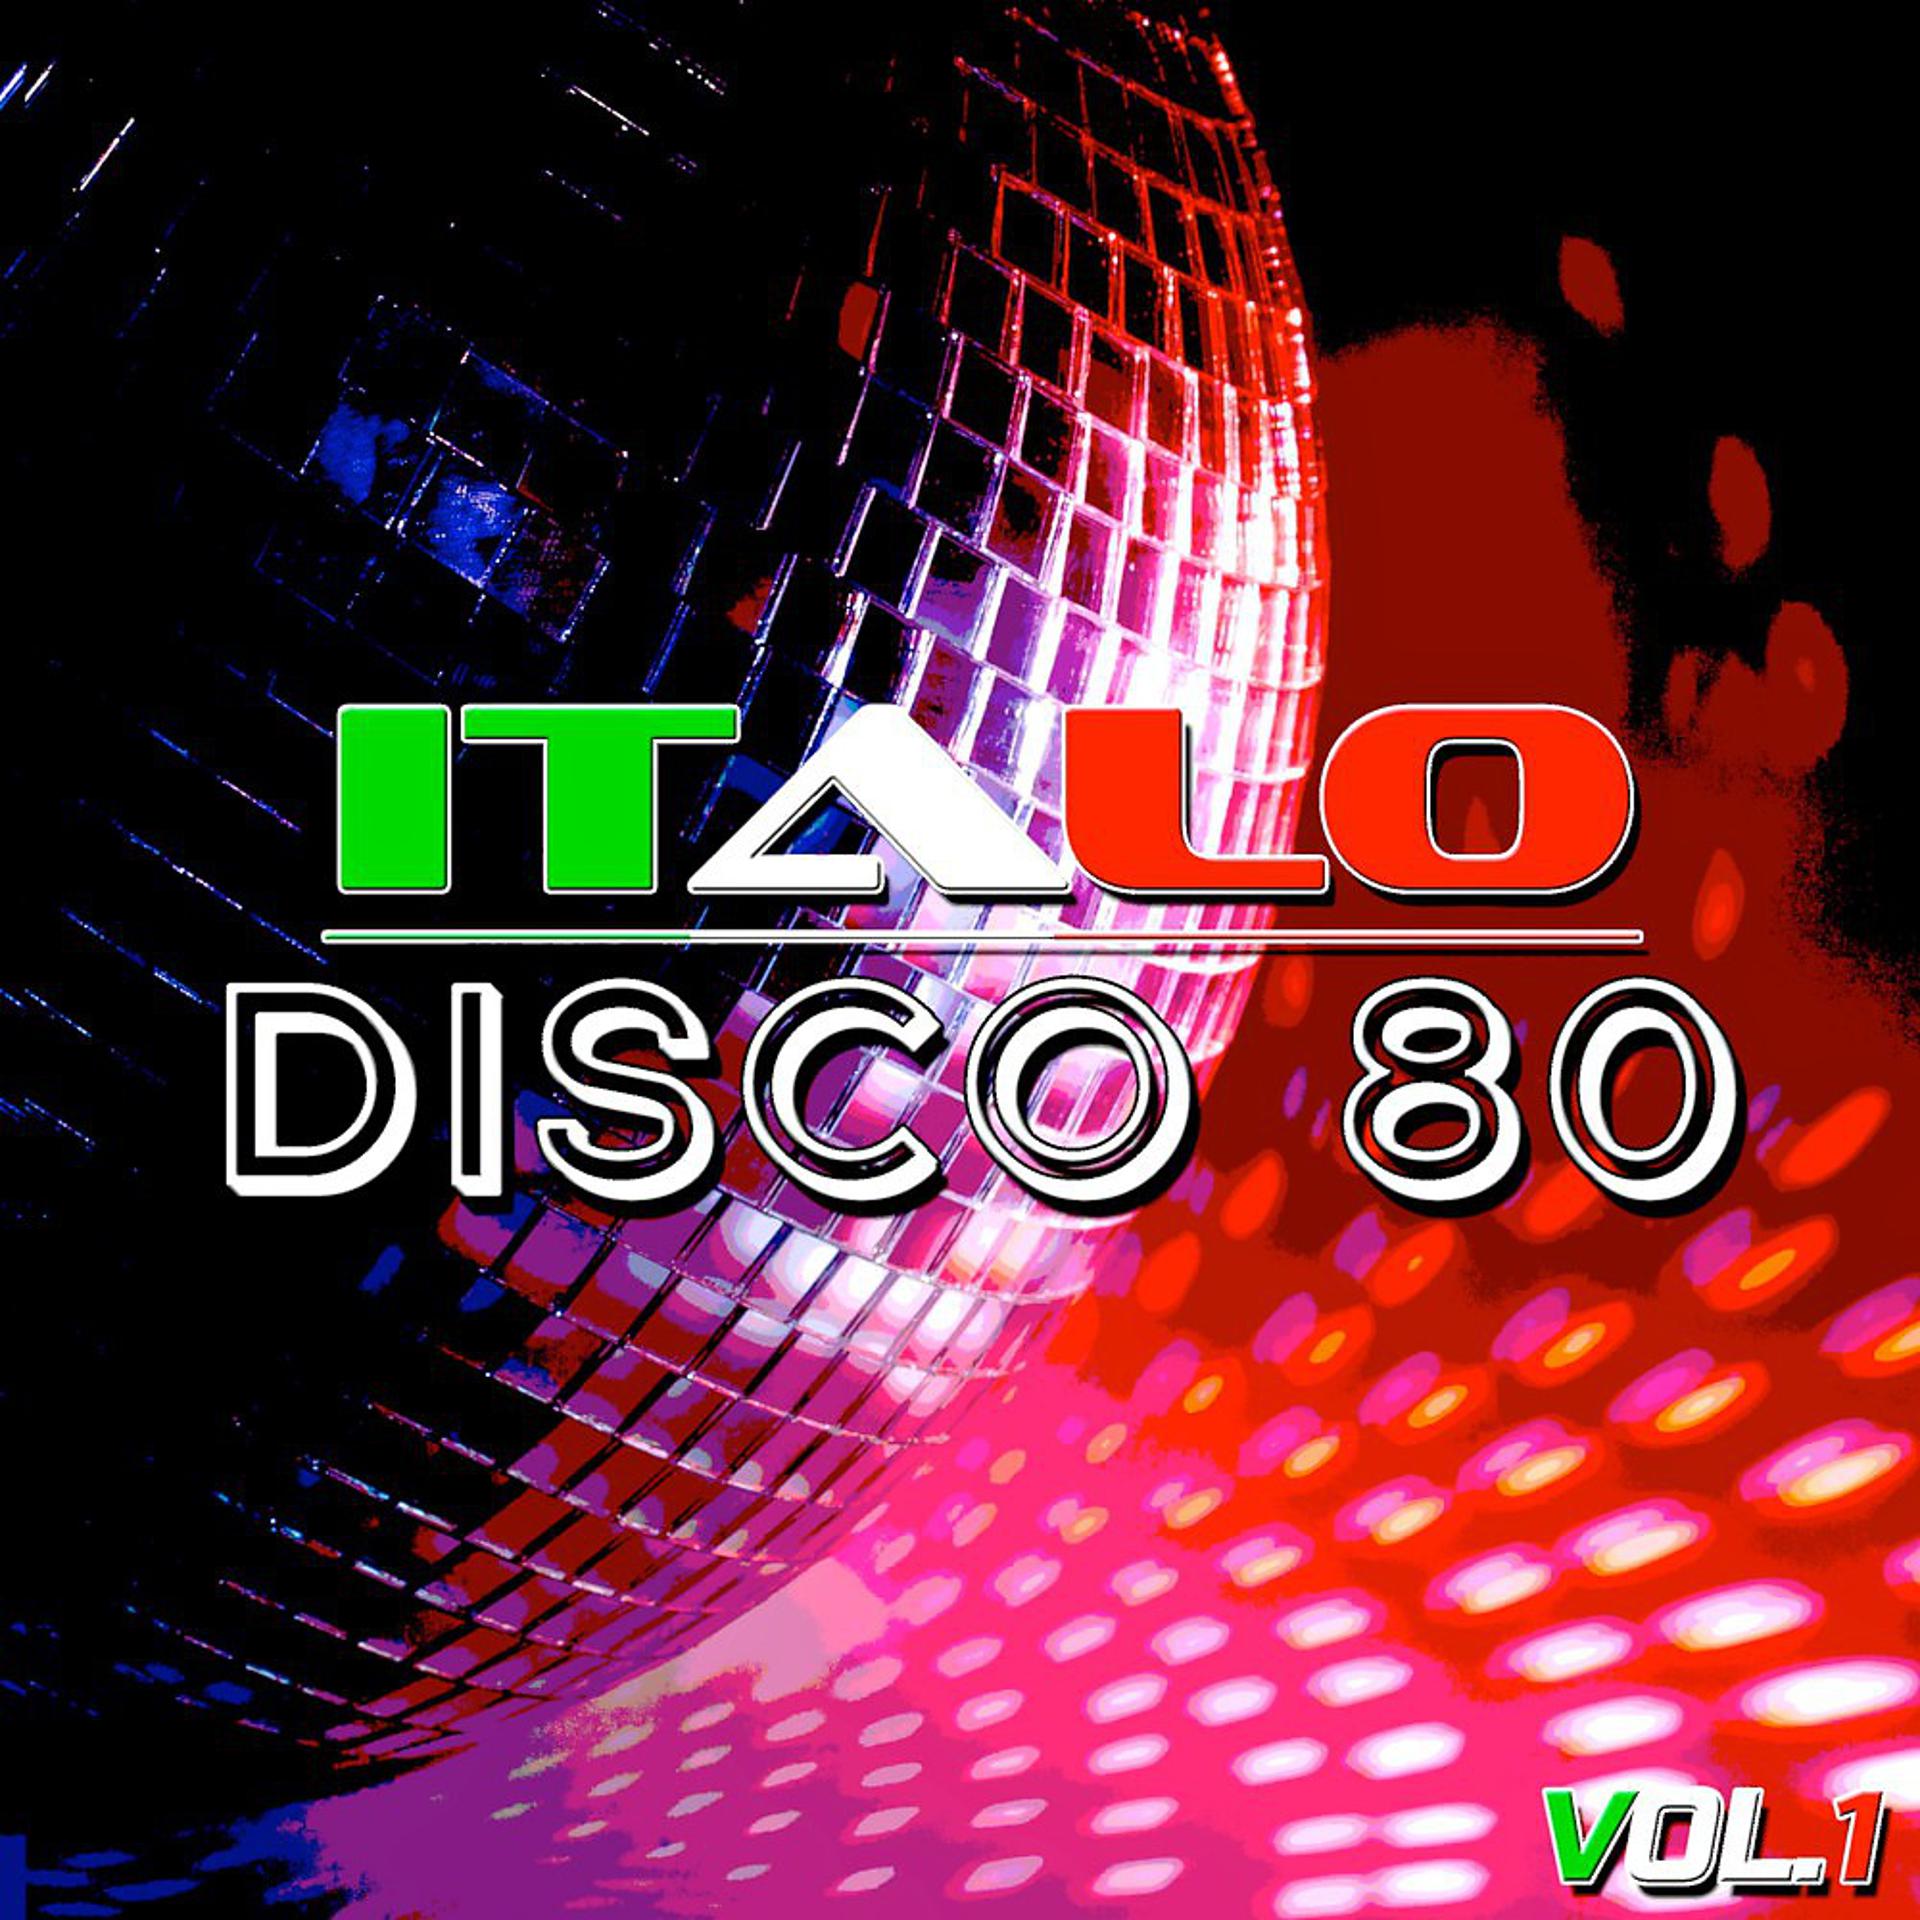 Итальянское диско оригинал. Итало диско. Итальянское диско. Итало диско 80. Итало диско итало диско.